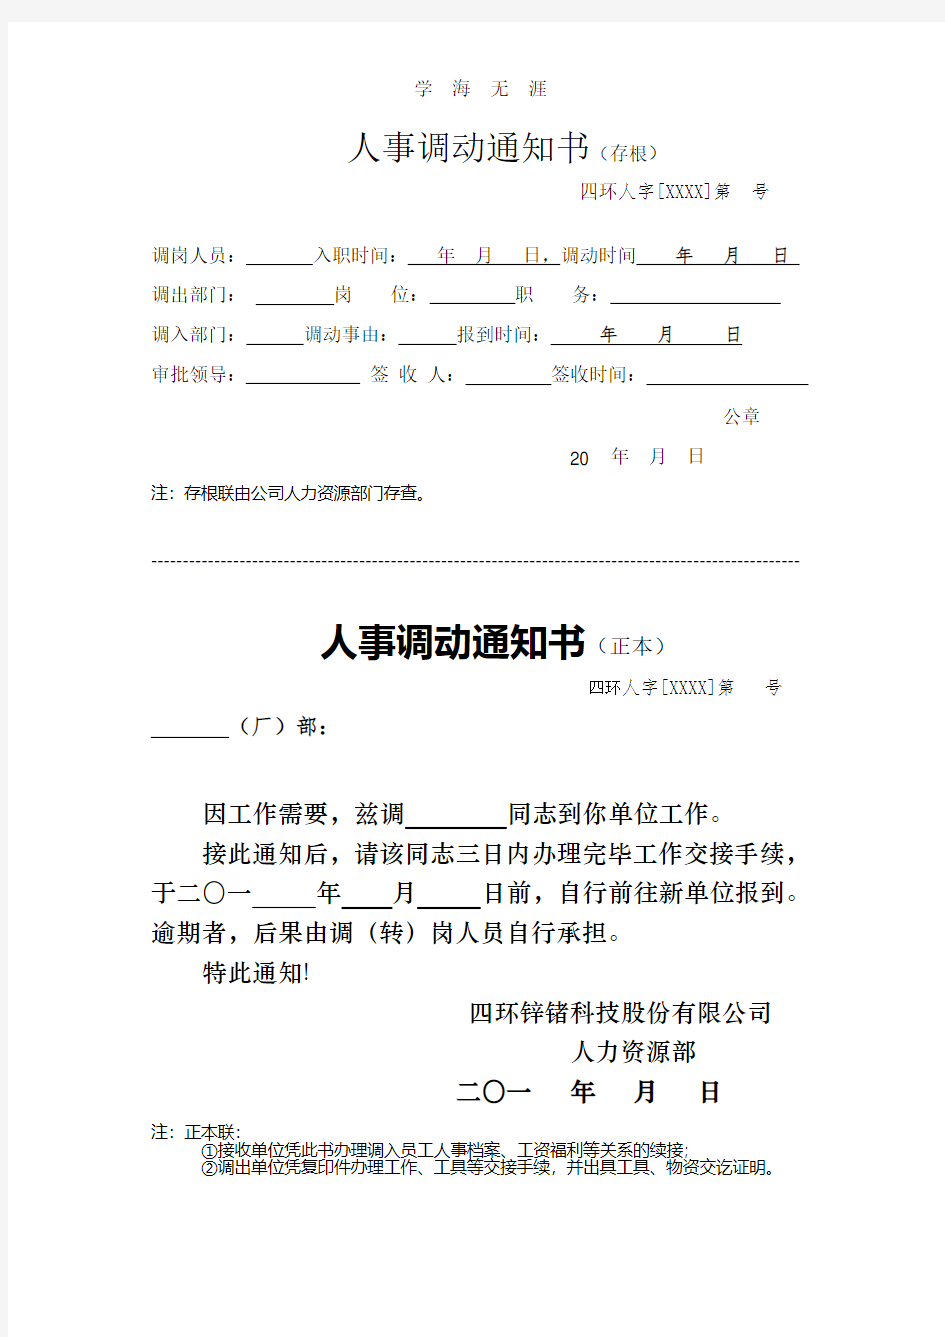 人事调令模板.pdf